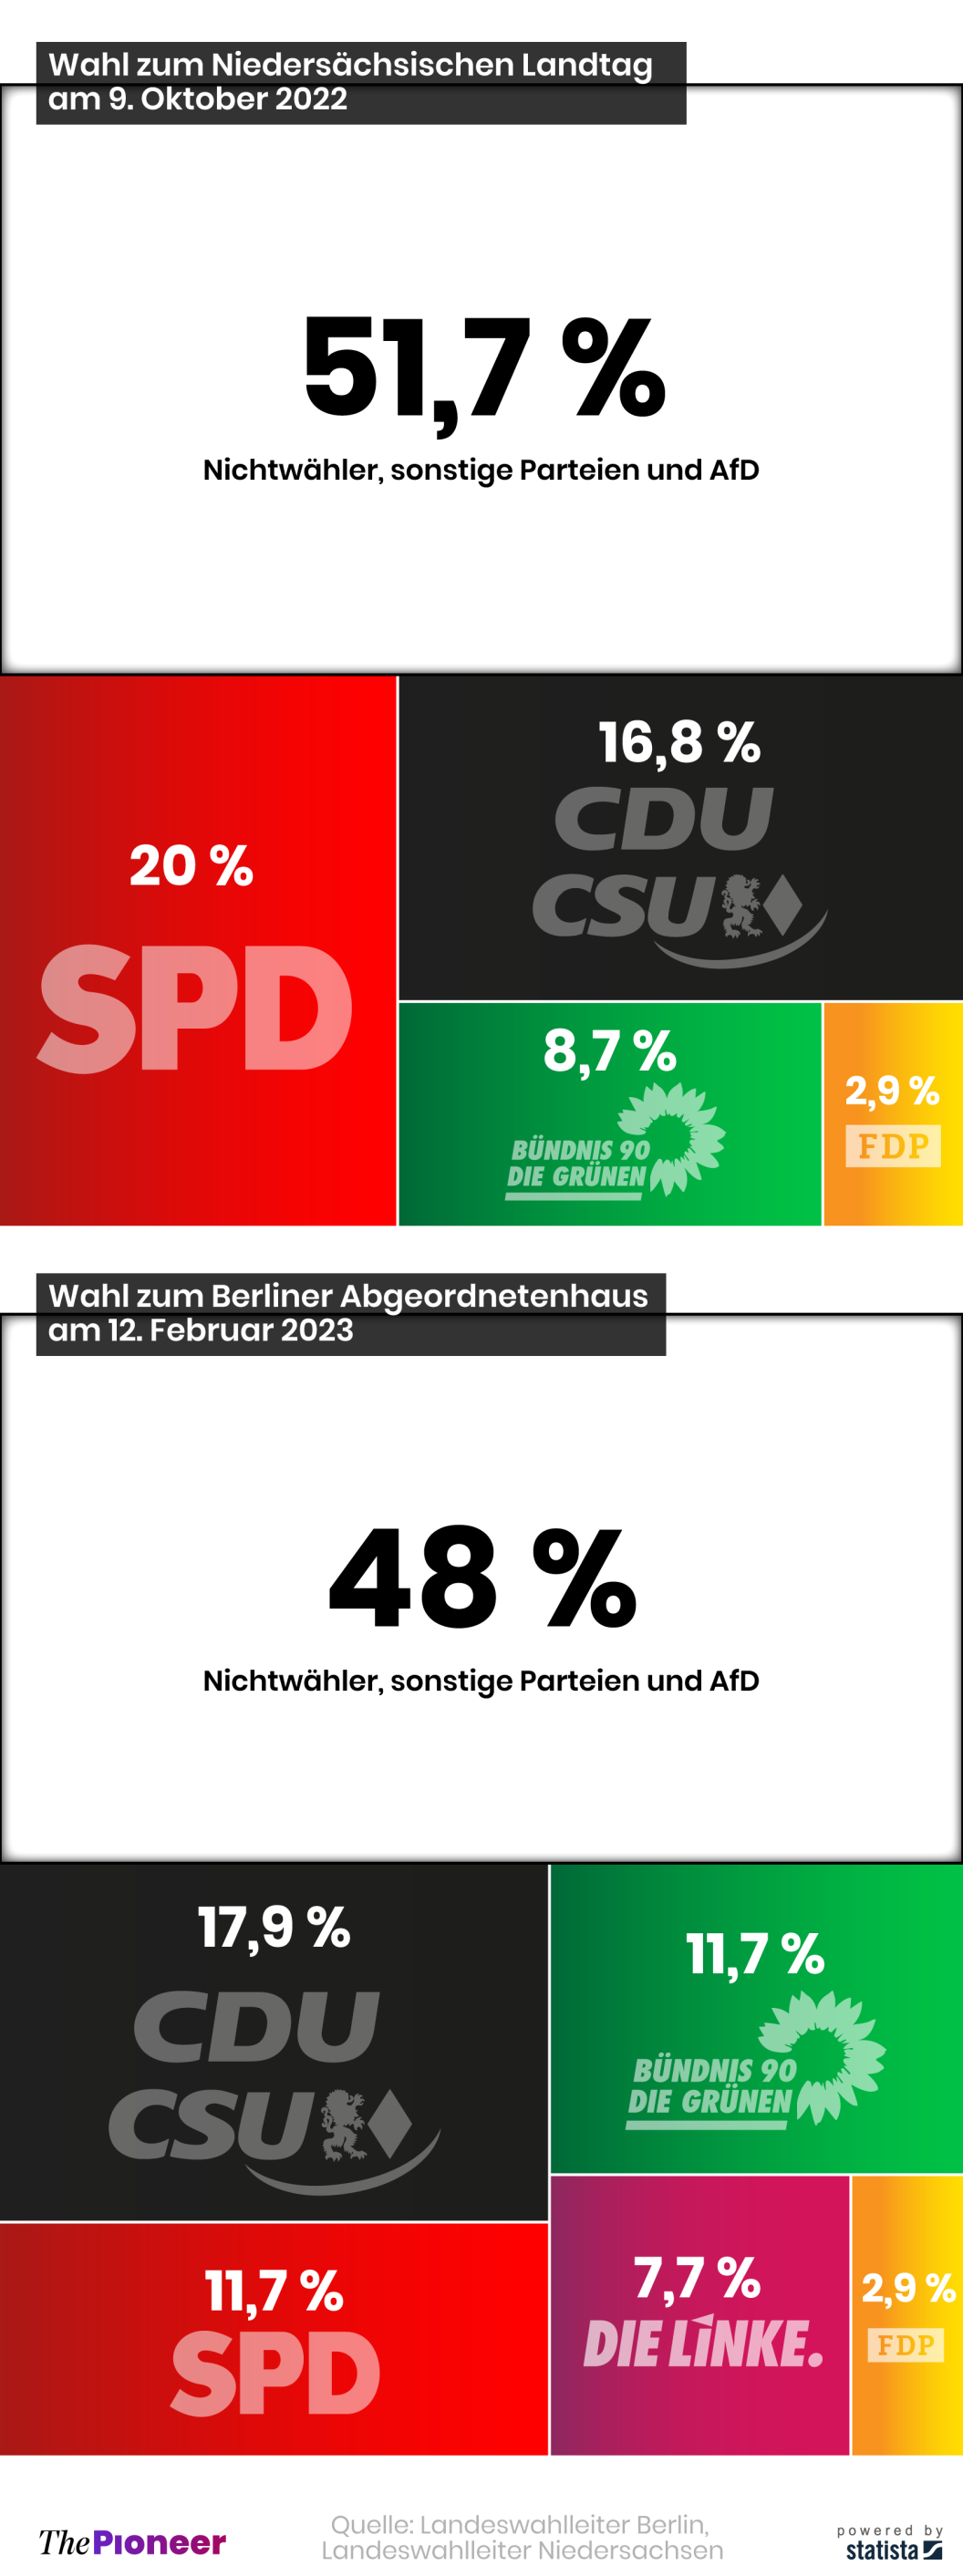 20230313-infografik-media-pioneer-Wahlgewinner-Berlin-Niedersachsen ohne